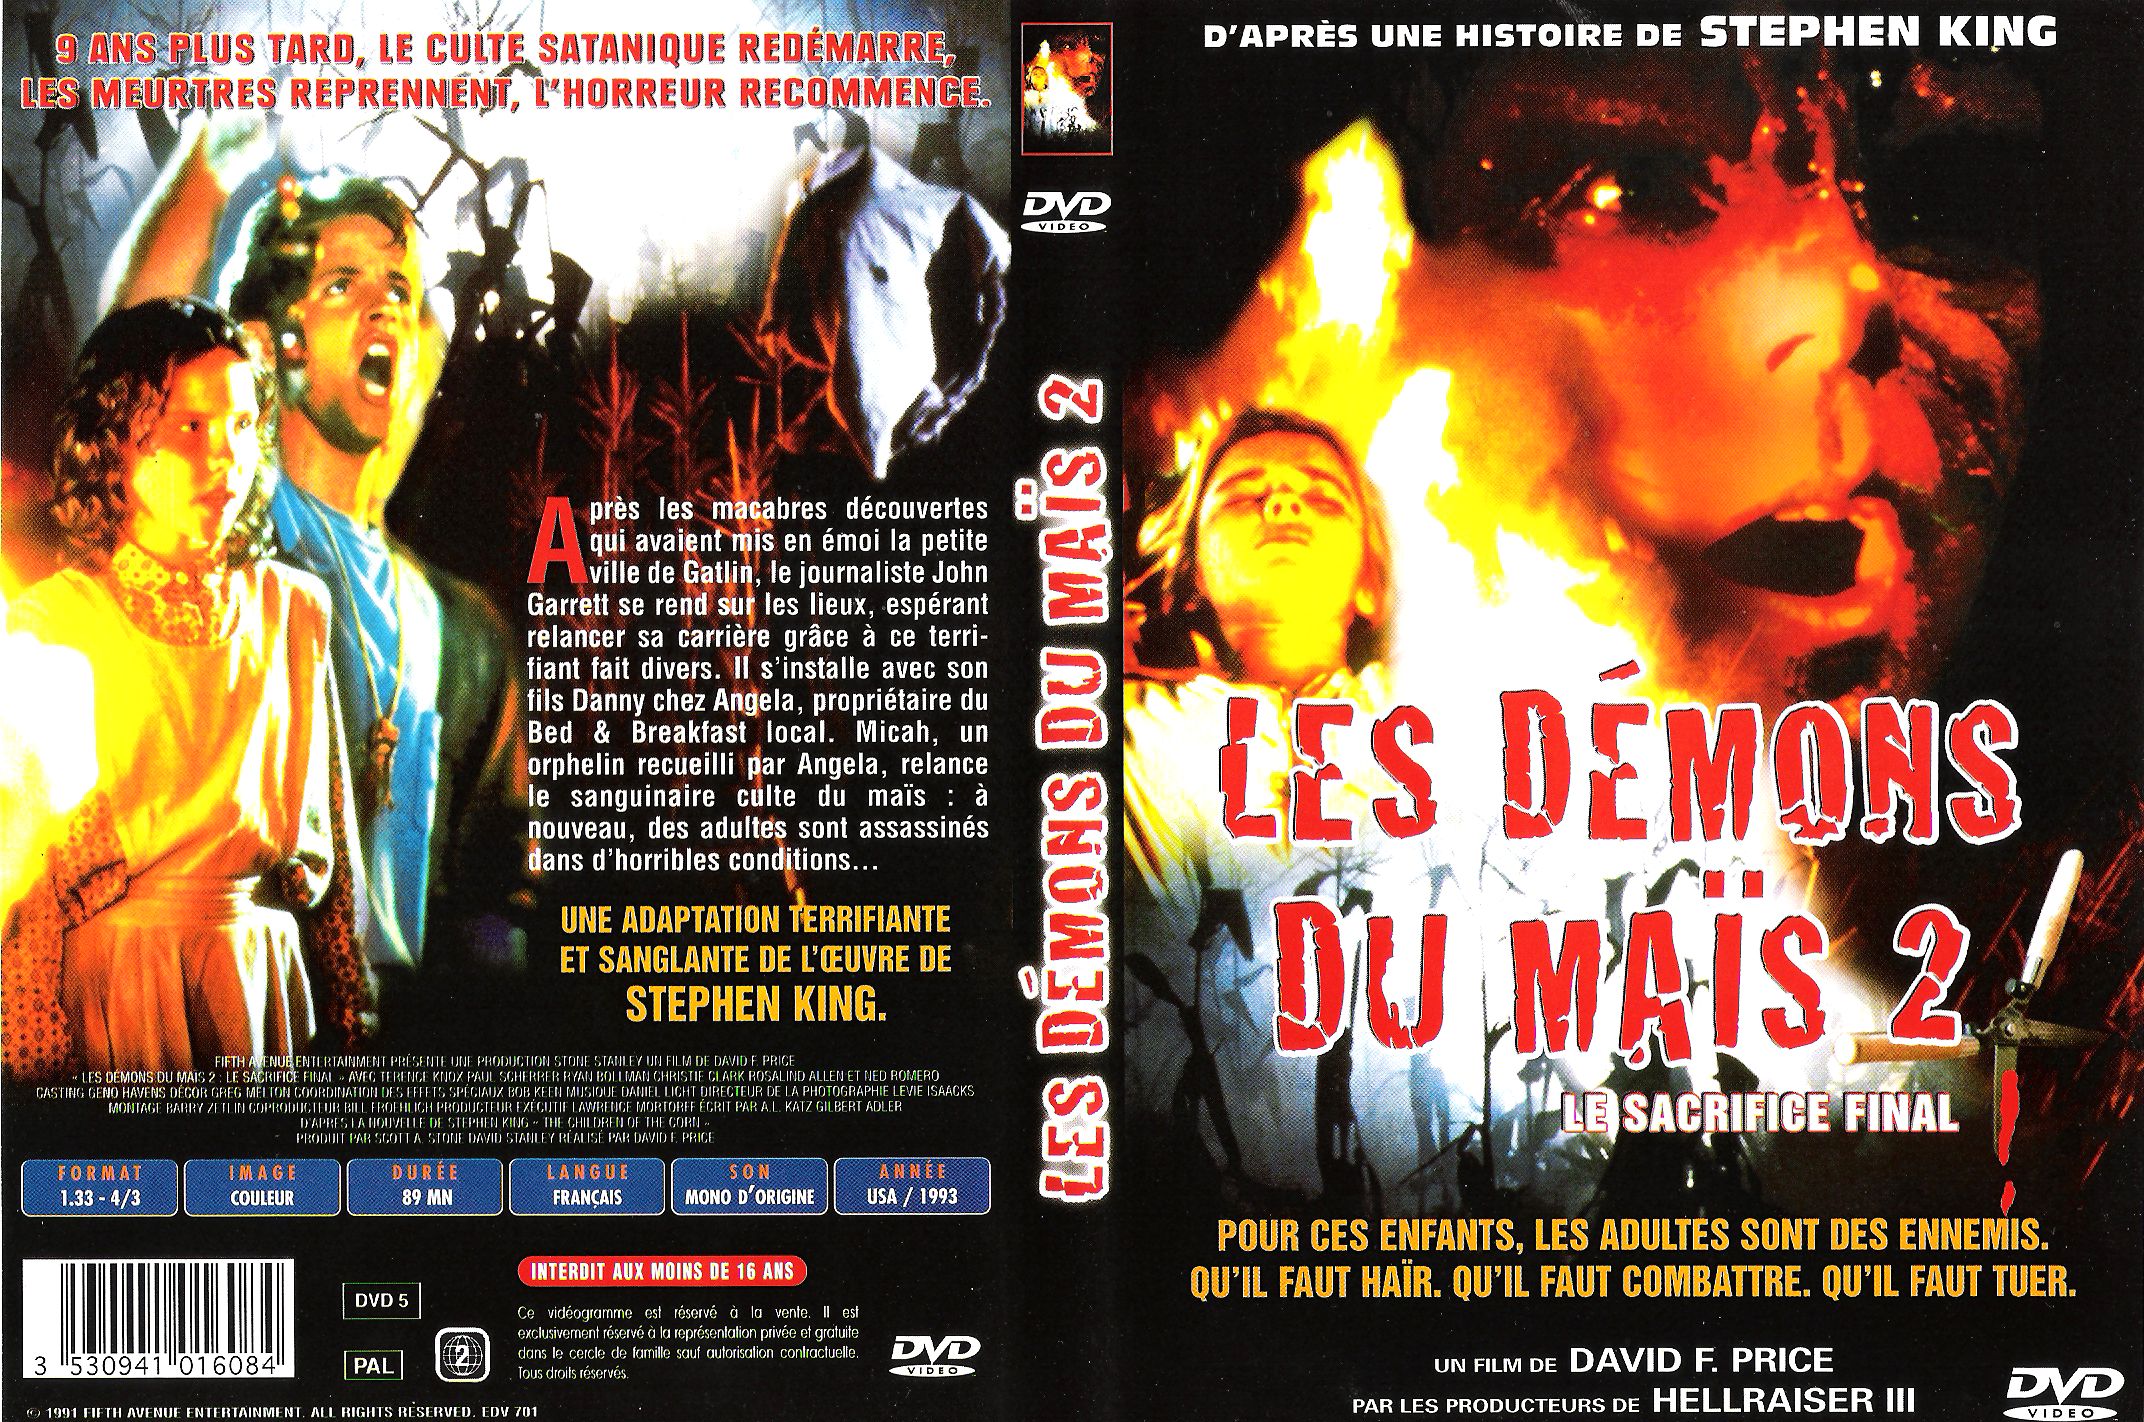 Jaquette DVD Les demons du mais 2 v2